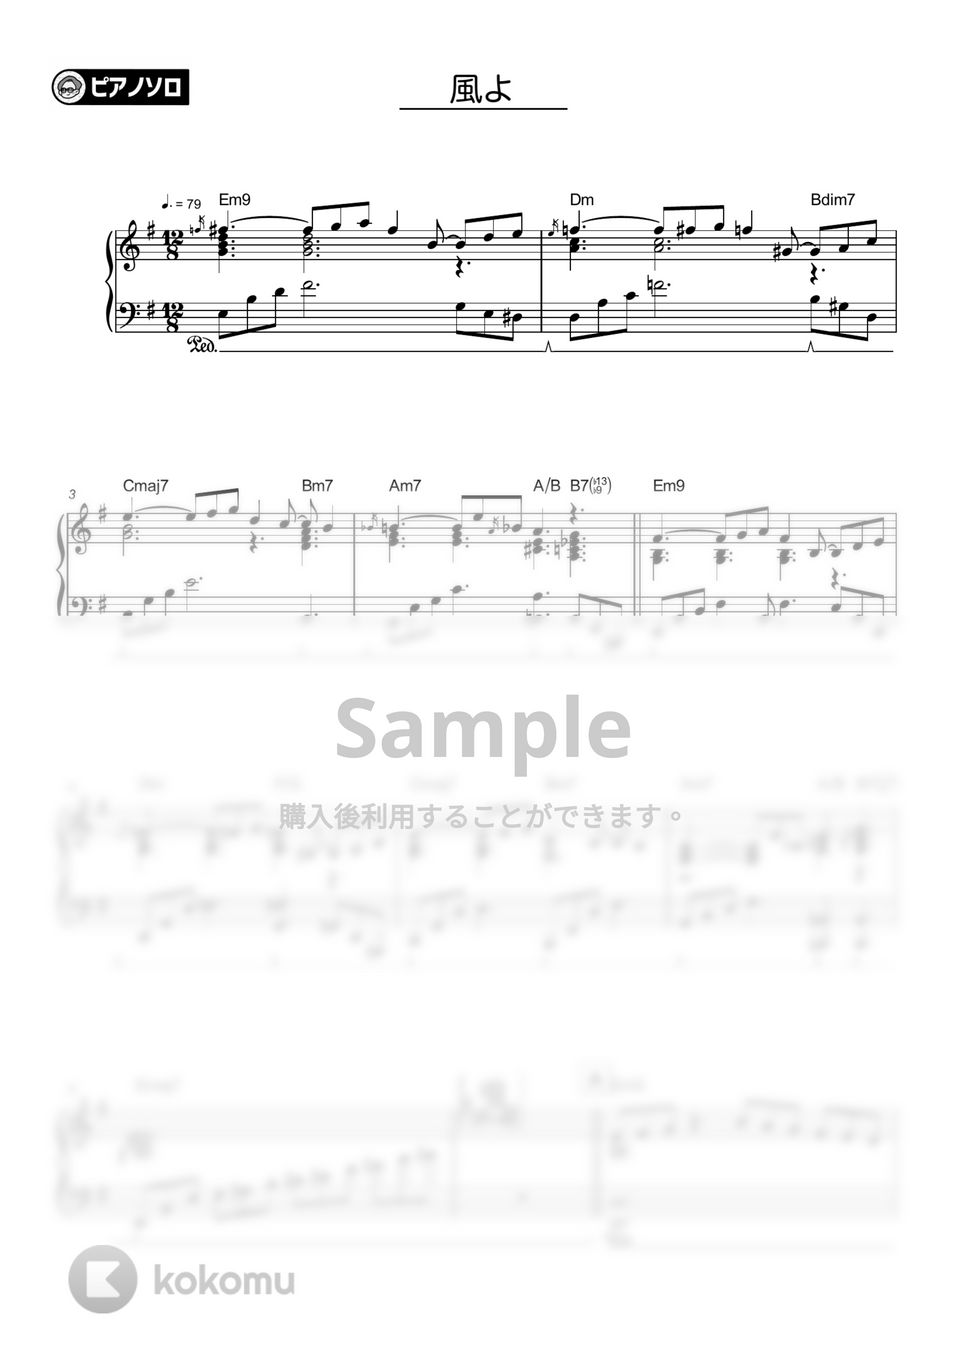 藤井風 - 風よ by シータピアノ